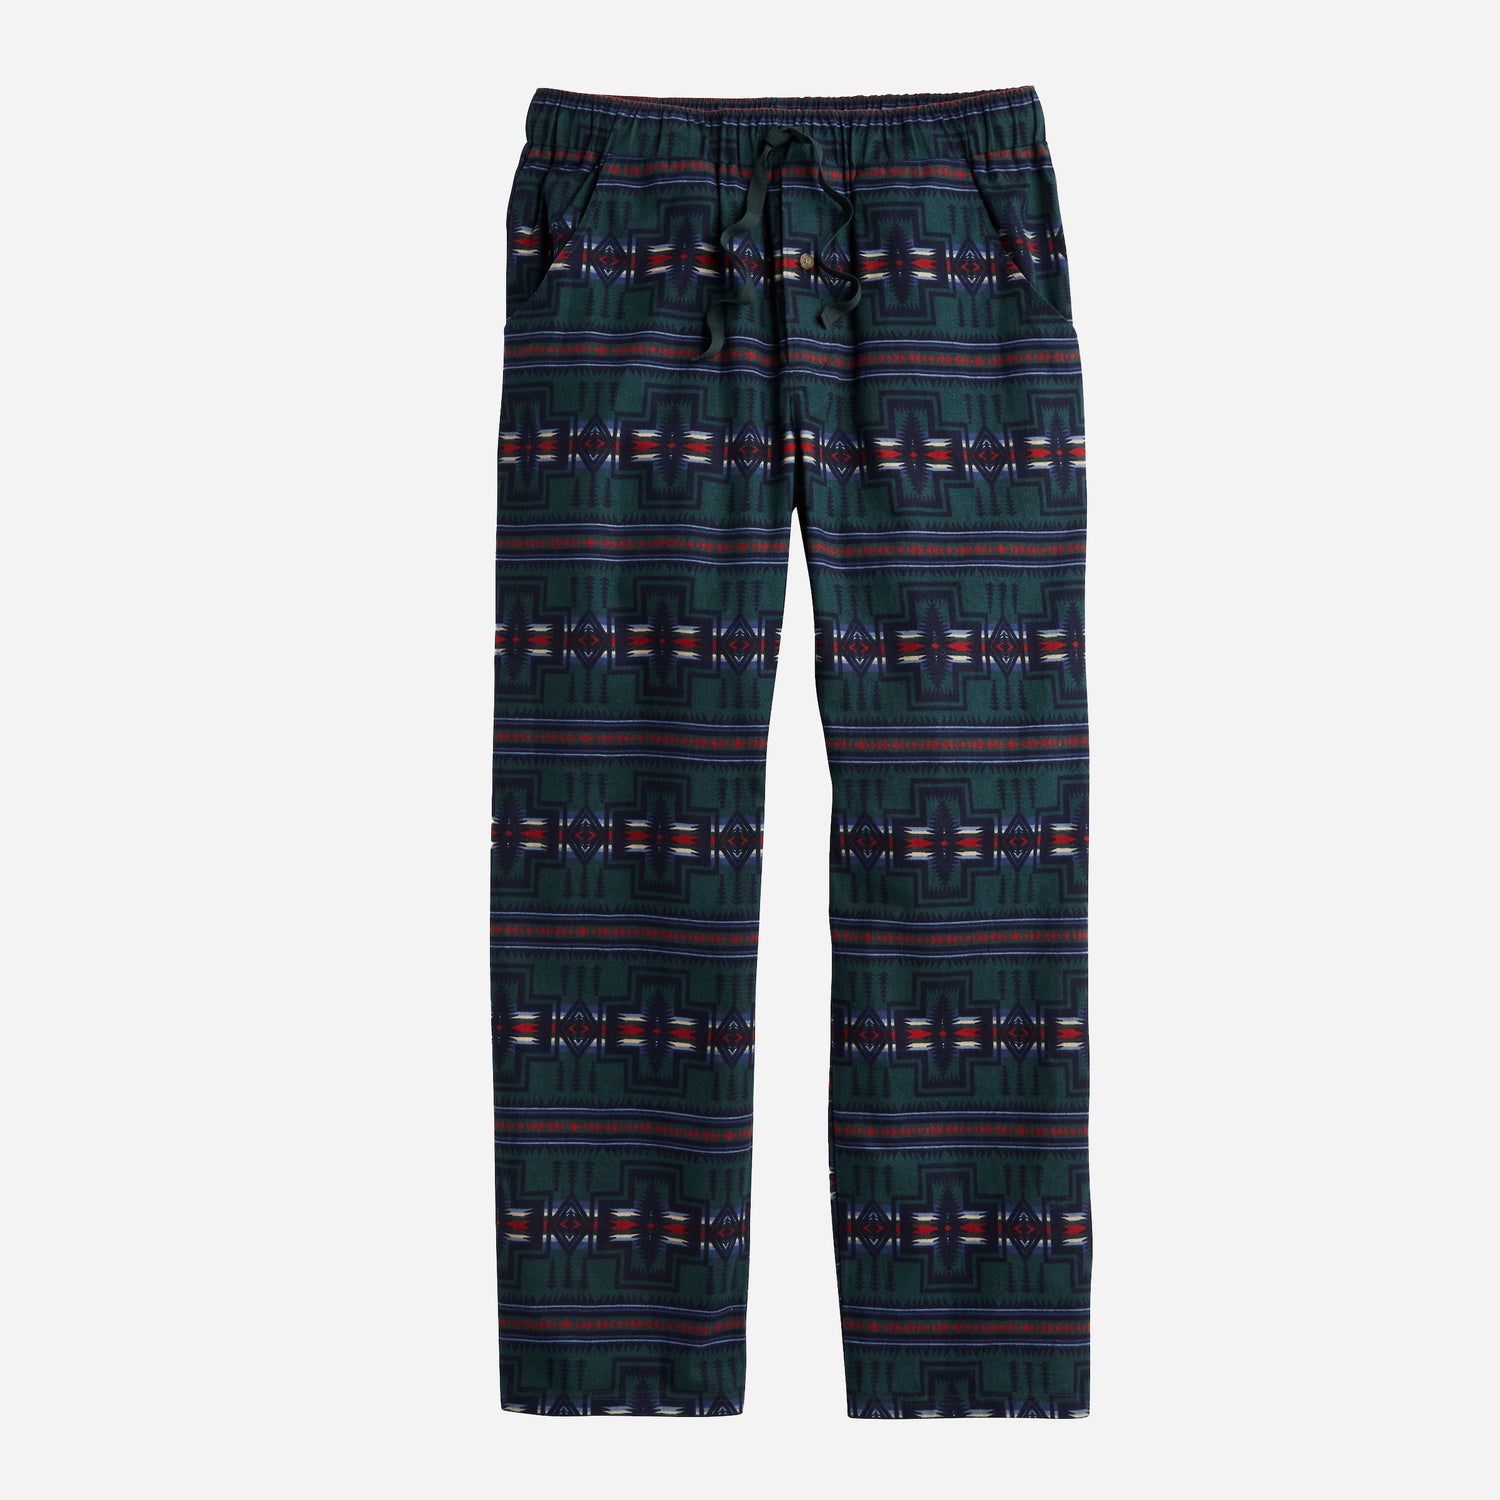 Printed Pajama Pant - Harding Spruce/Navy